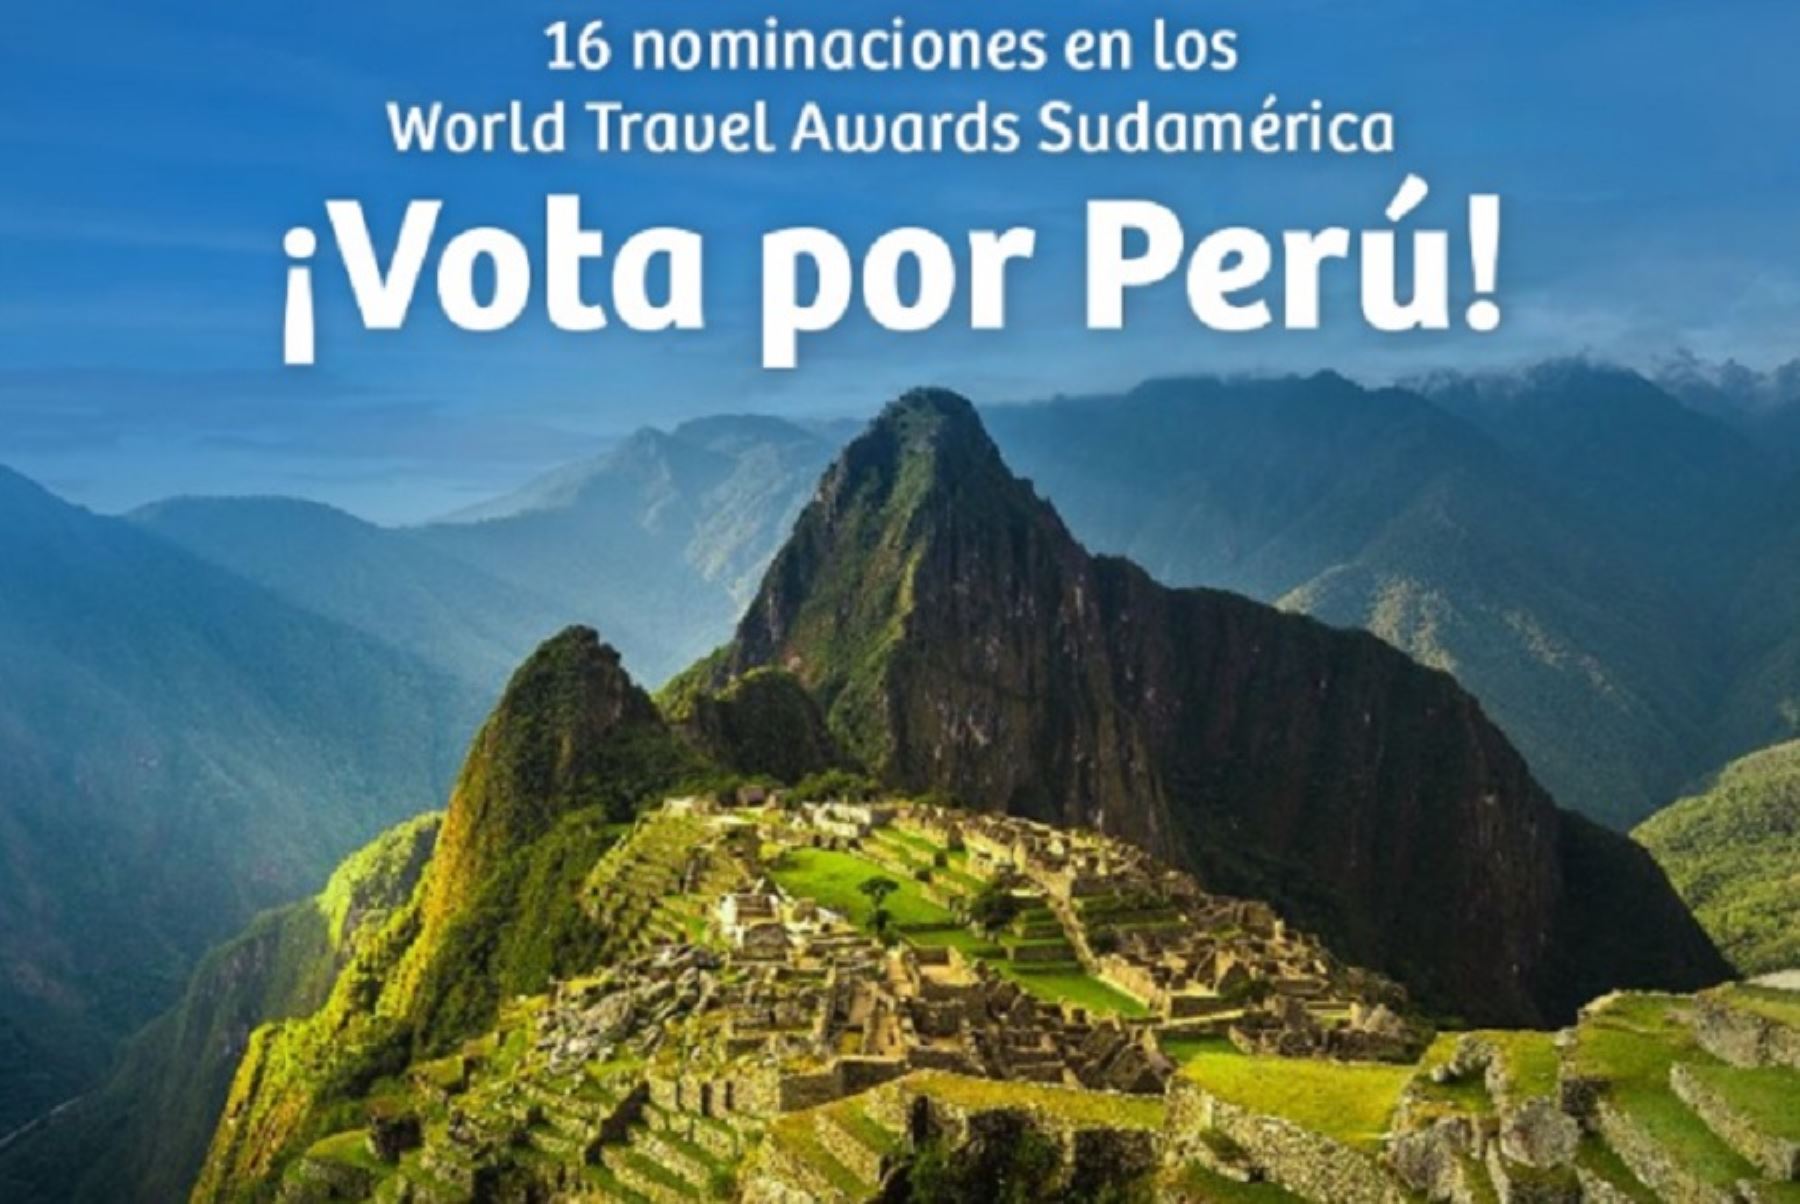 La trigésima edición de los World Travel Awards están en marcha y Perú vuelve a ser un importante competidor en Sudamérica con 16 nominaciones lideradas por Machu Picchu, estandarte turístico nacional y maravilla mundial que aspira a coronarse por sexta vez consecutiva.